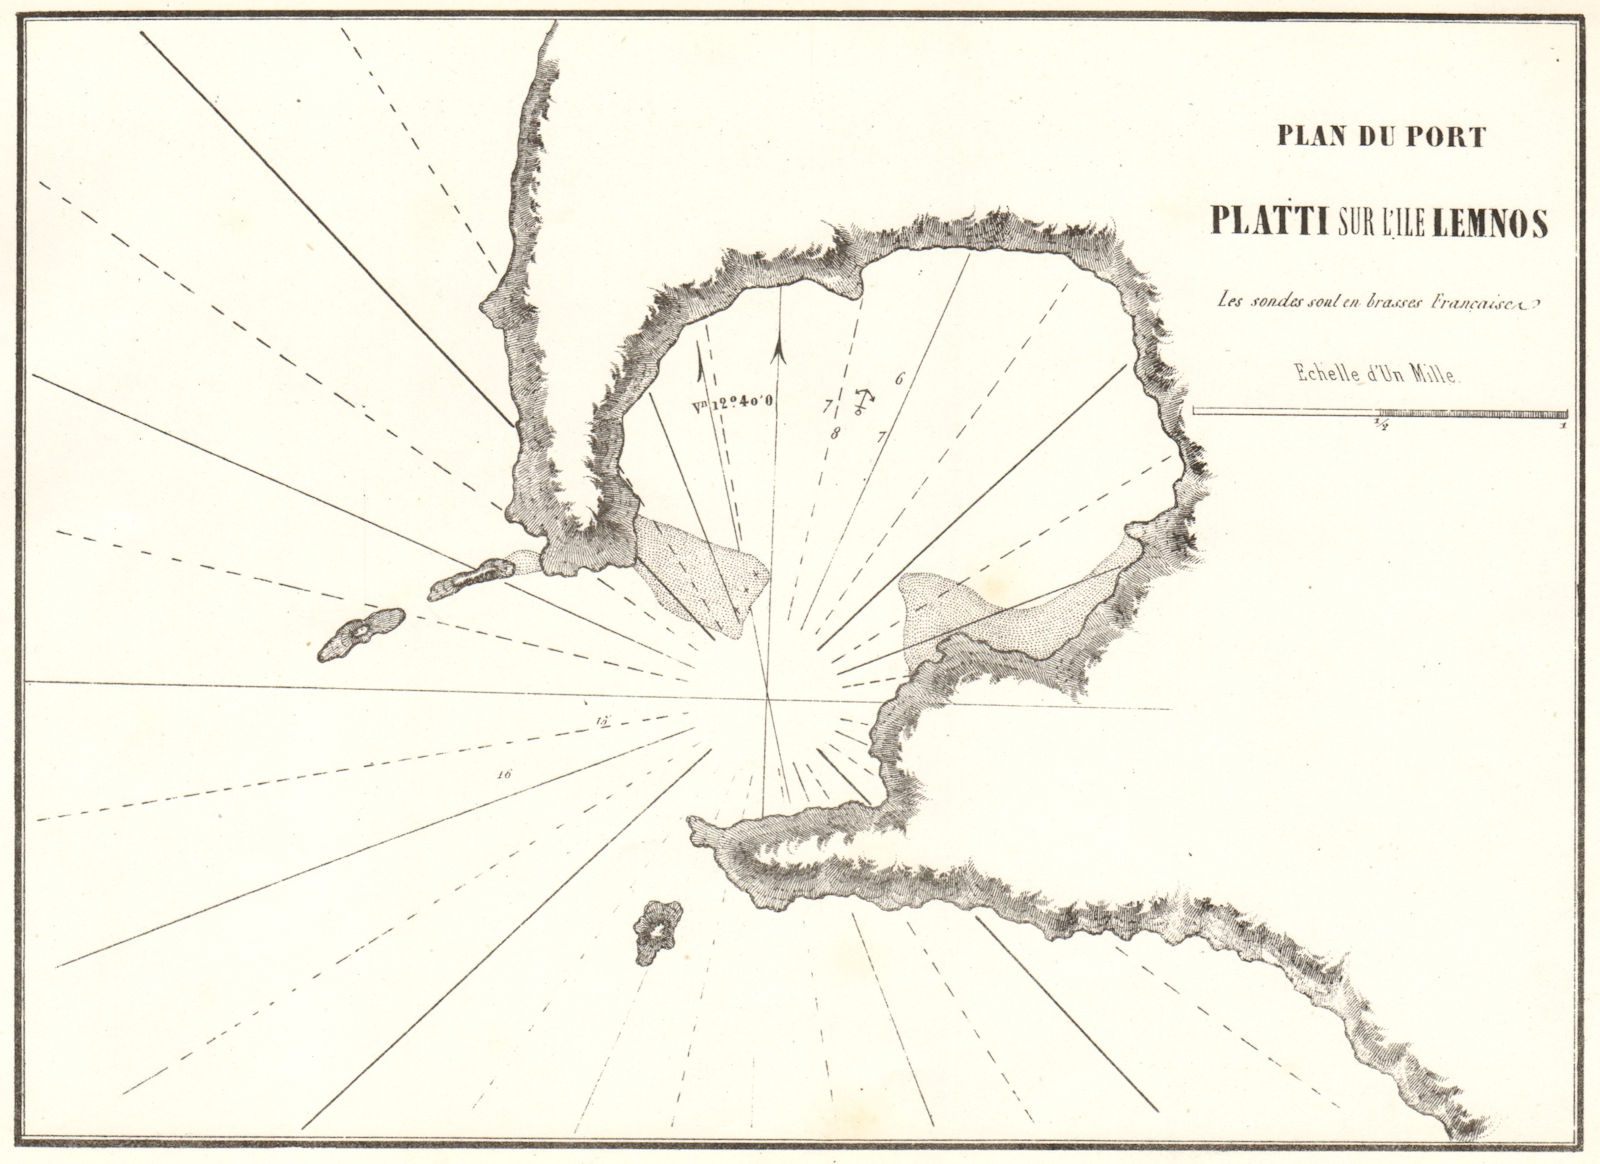 Platy, Lemnos. 'Plan du Port Platti sur L'ile Lemnos'. Greece. GAUTTIER 1854 map